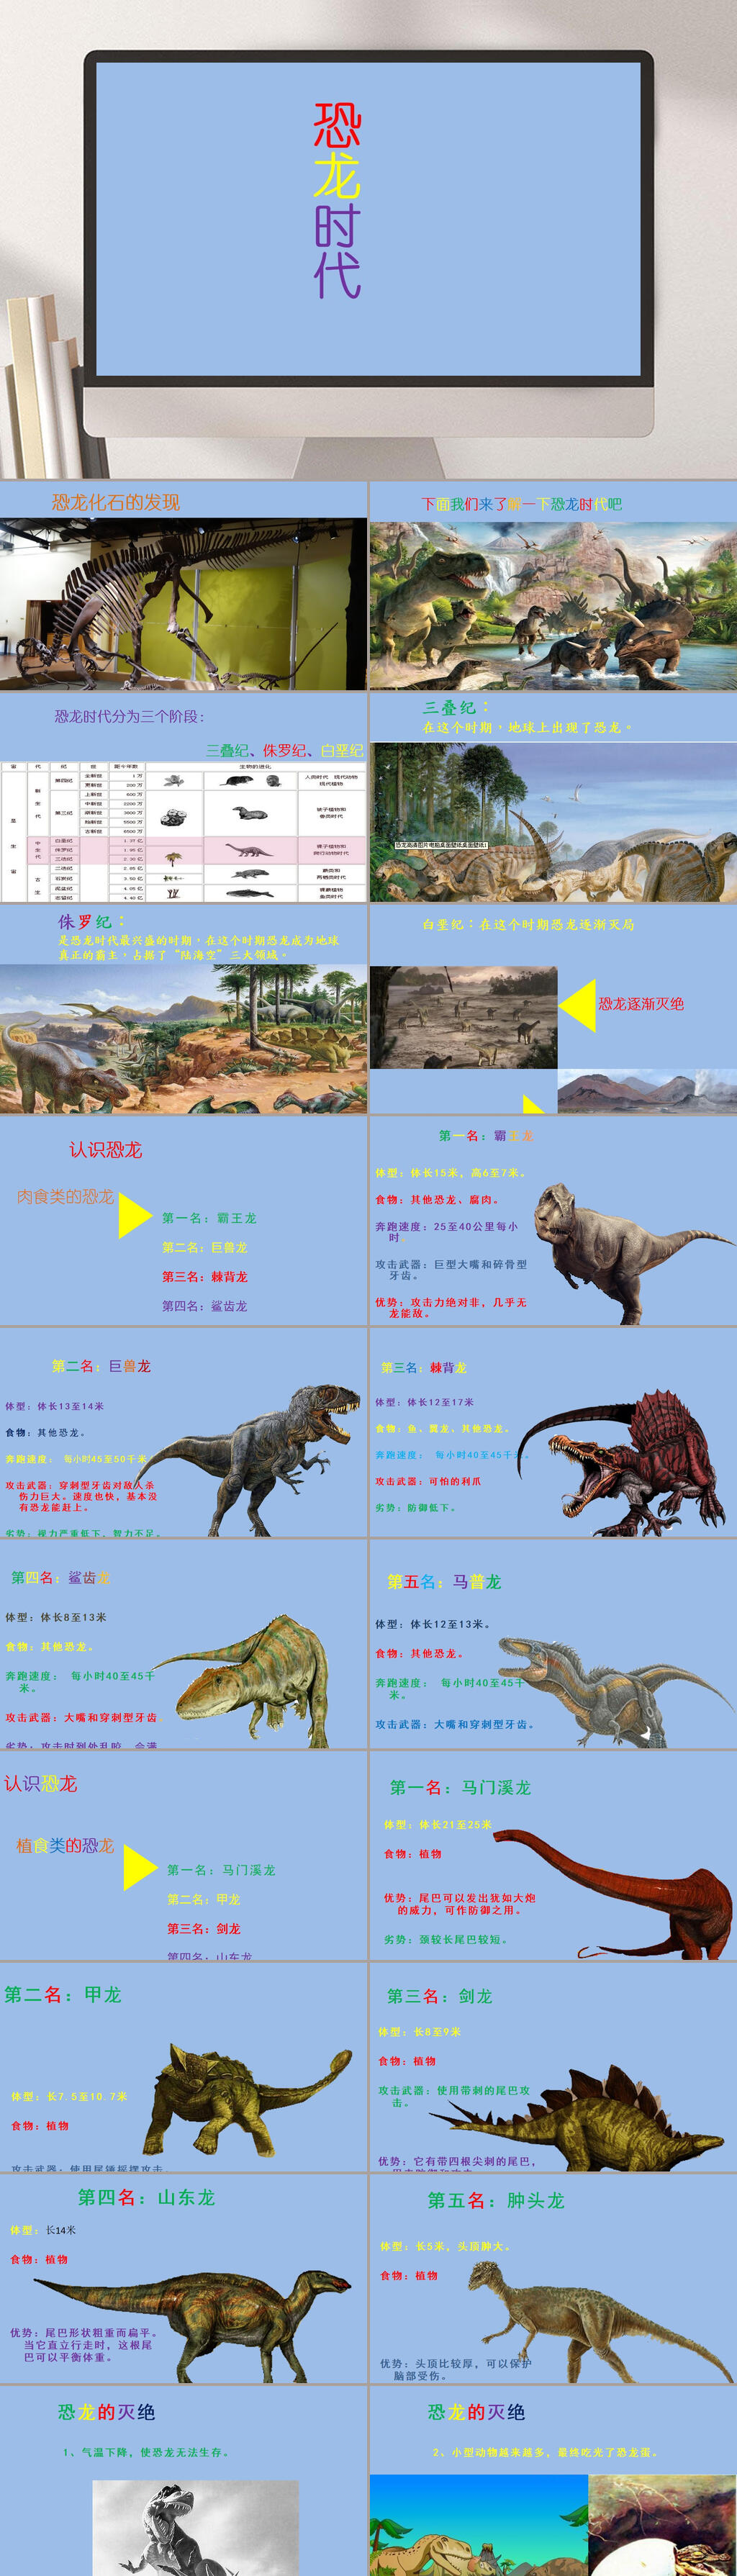 恐龙时期ppt图片